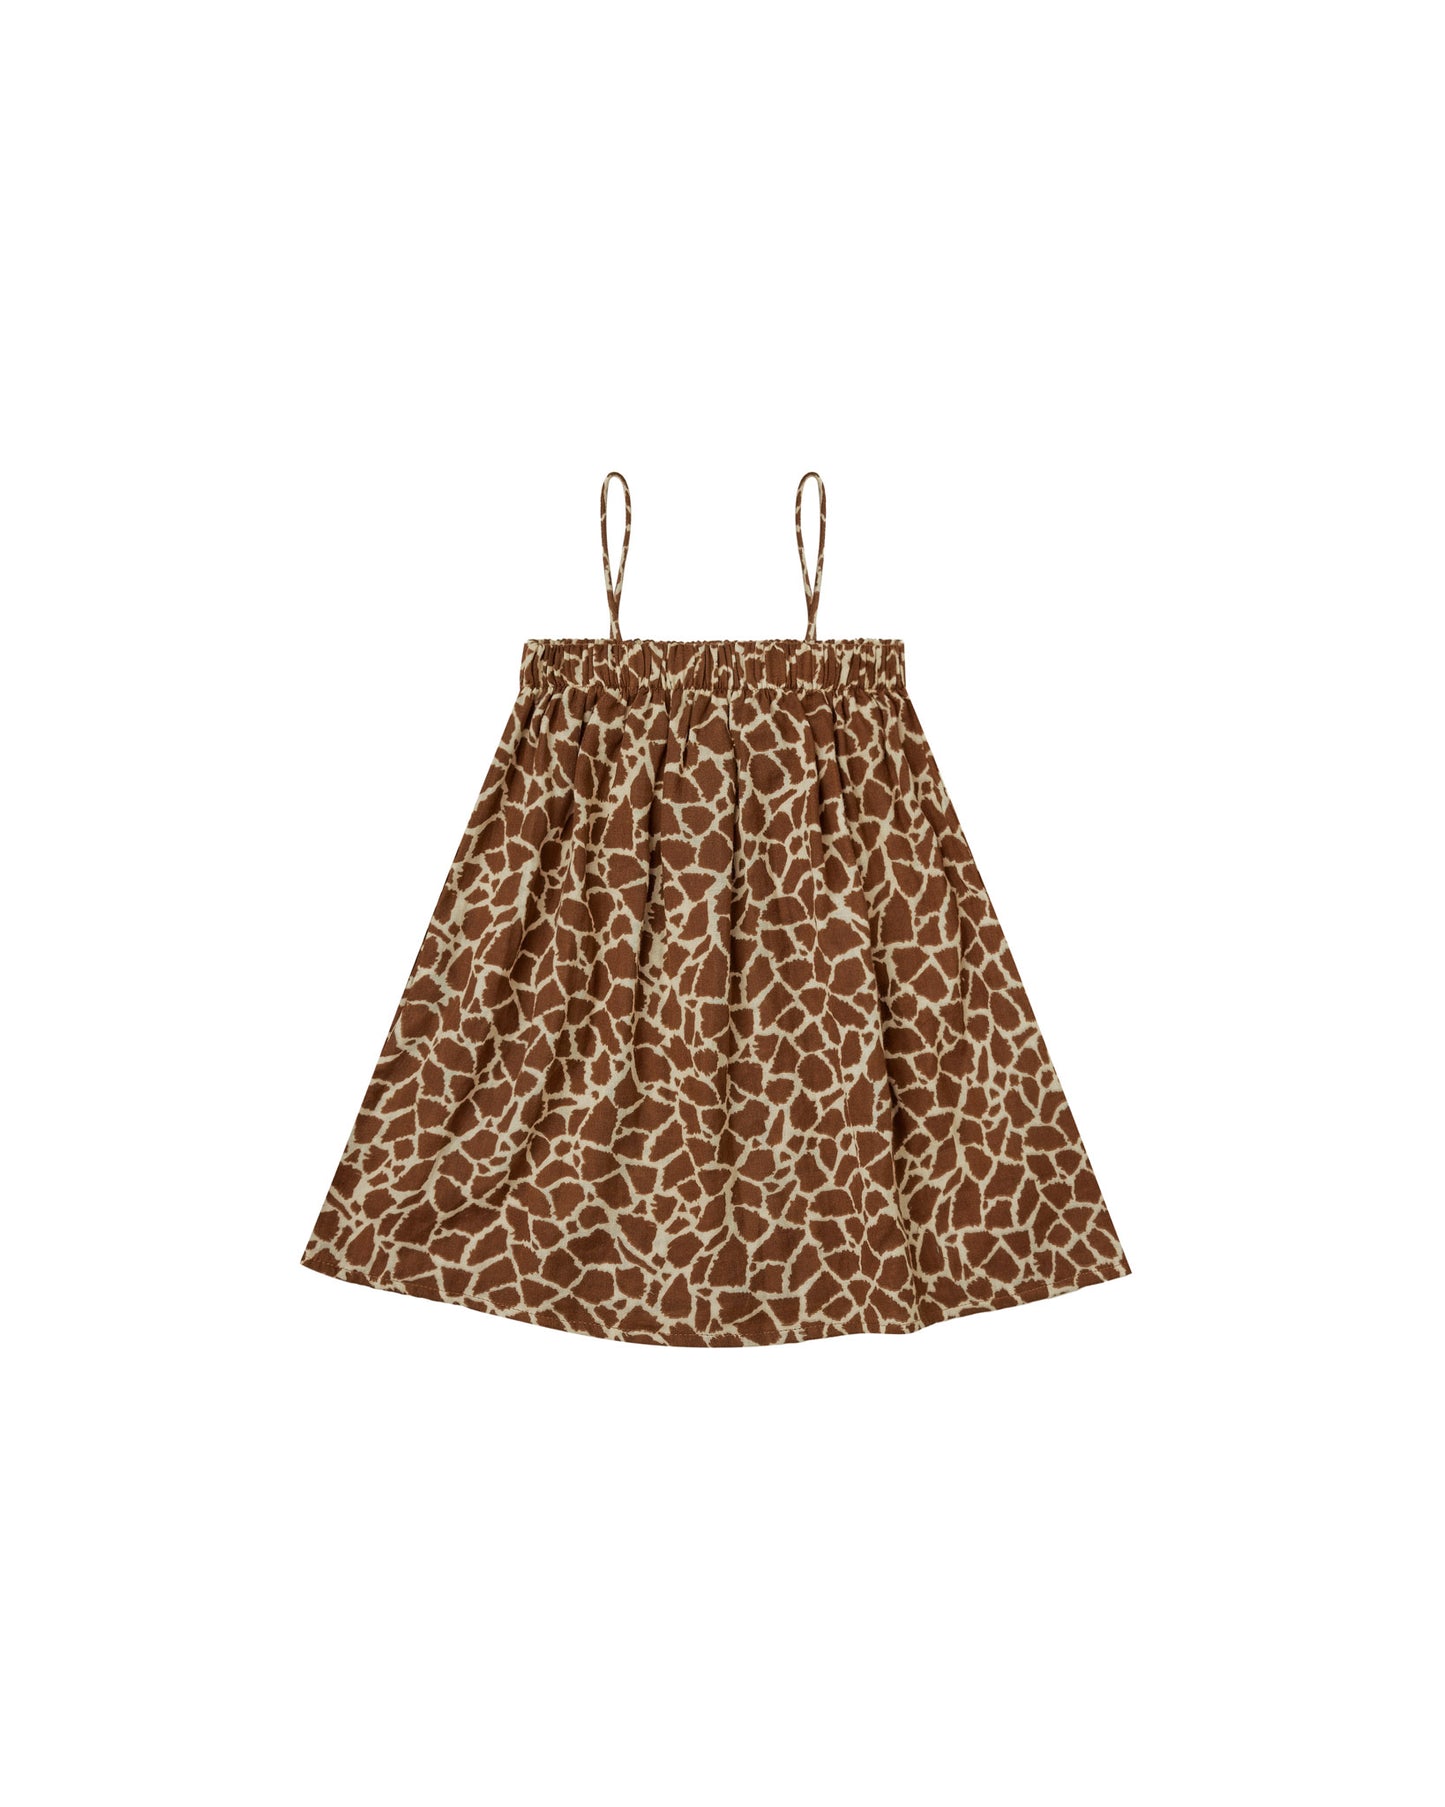 Rylee + Cru - Sahara Mini Dress - Giraffe Spots